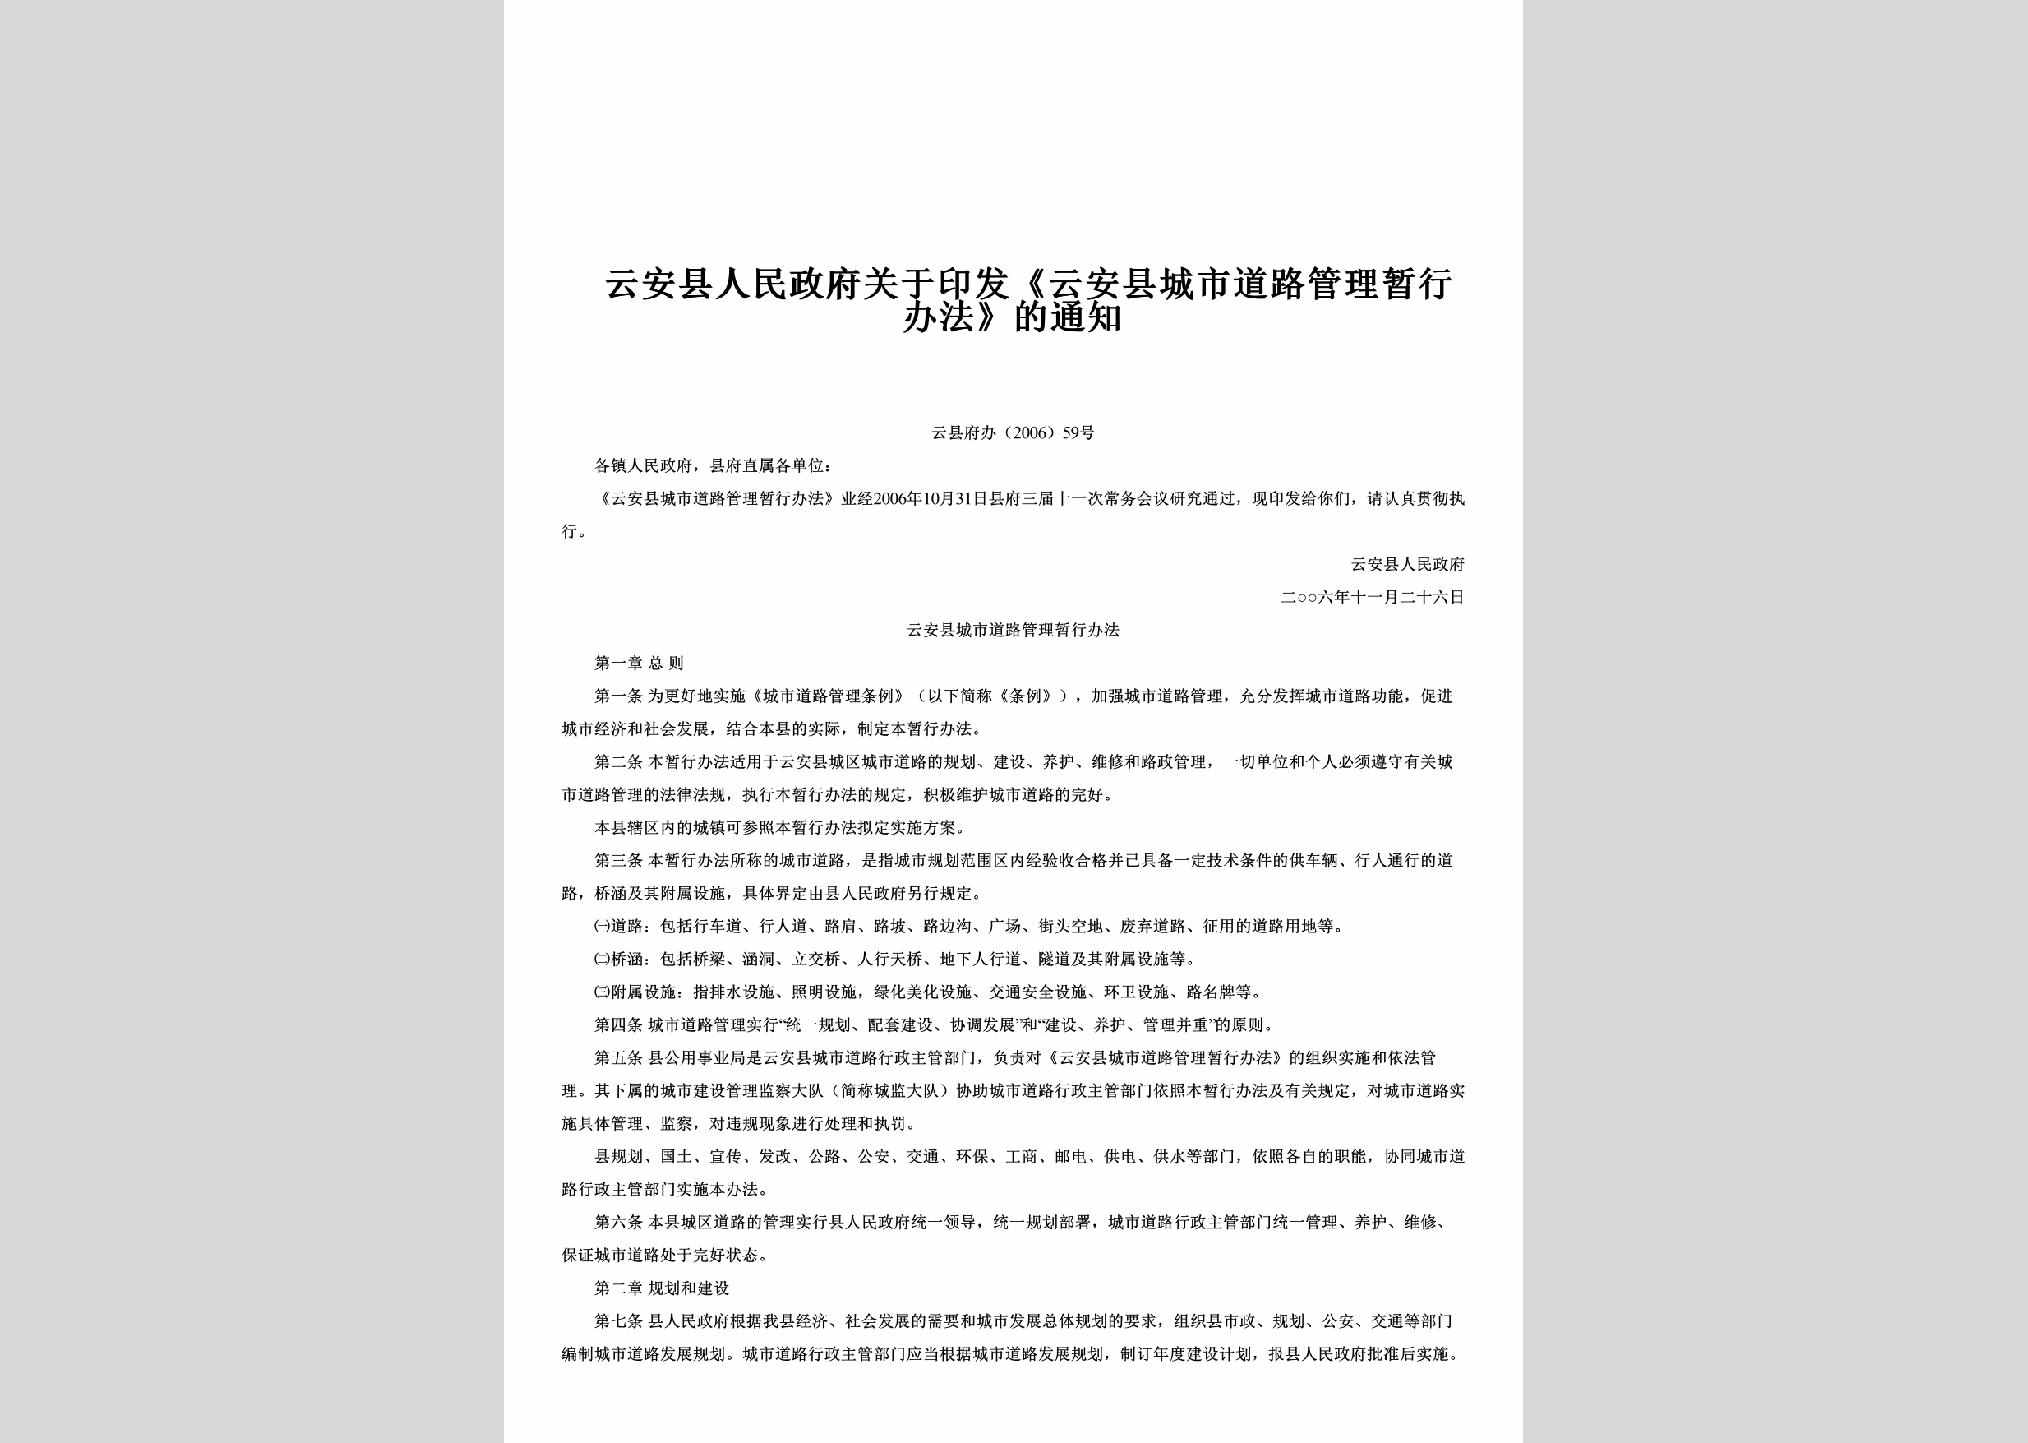 云县府办[2006]59号：关于印发《云安县城市道路管理暂行办法》的通知